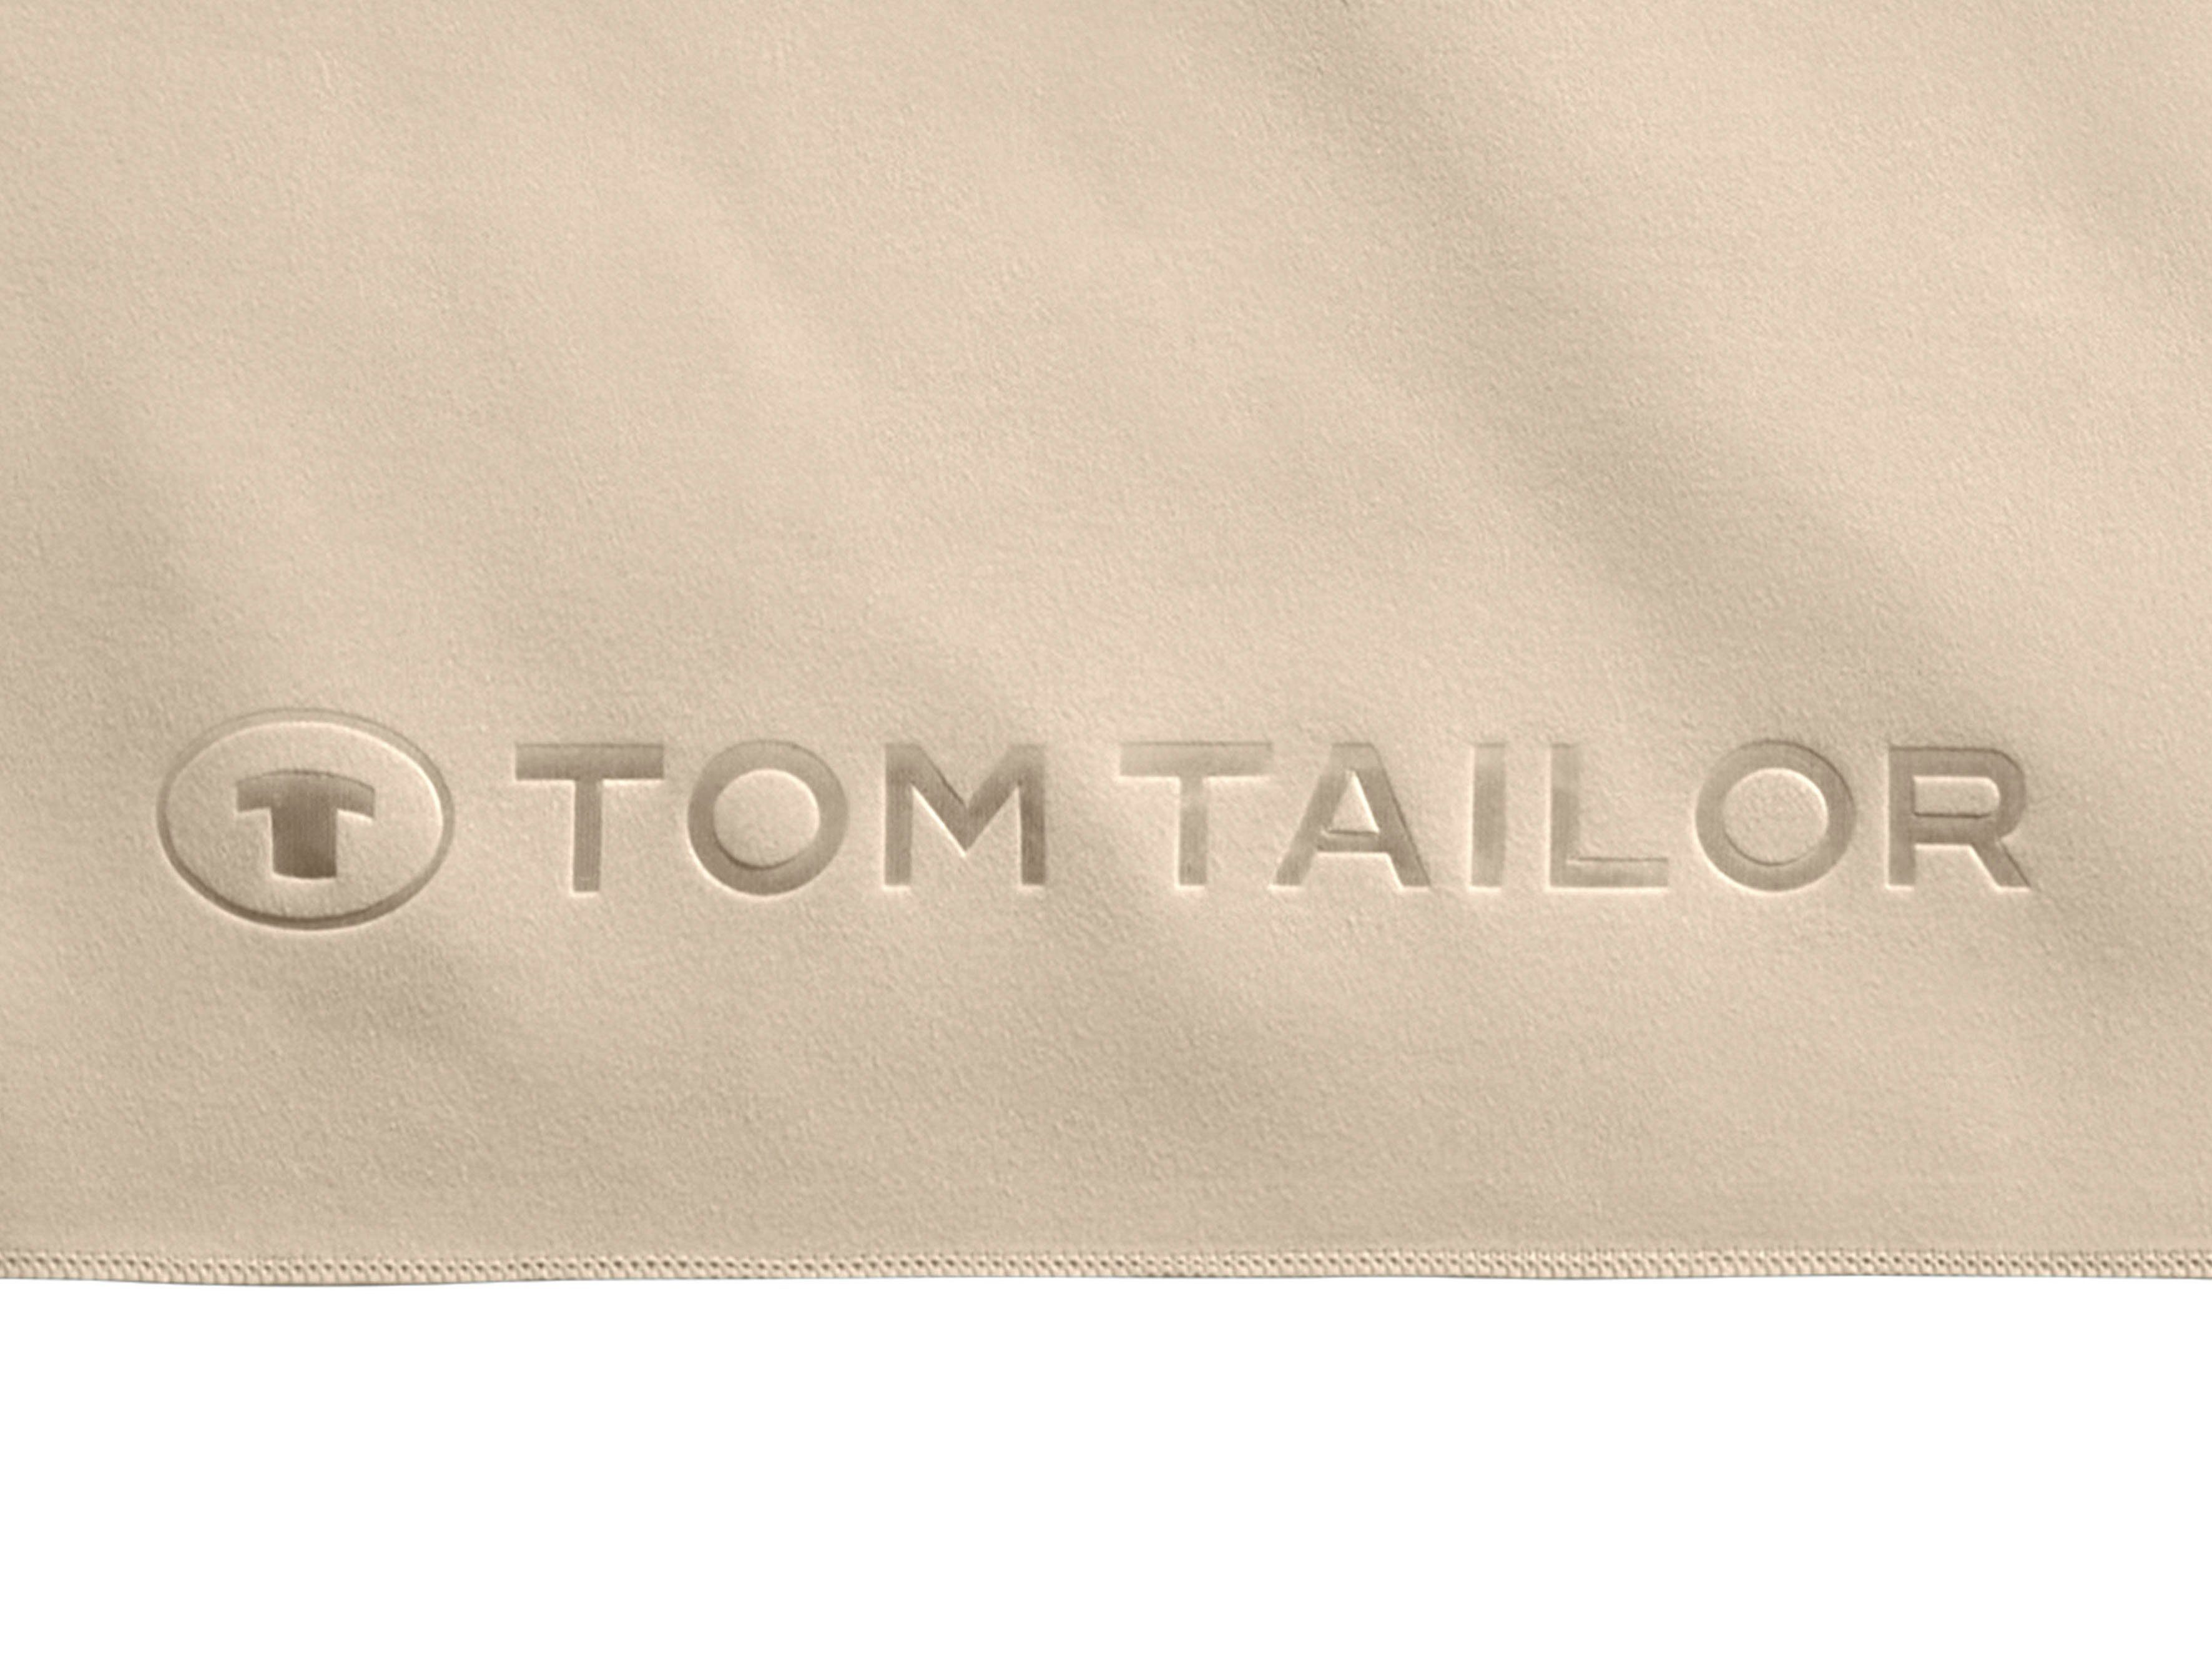 TOM TAILOR schnell Duschtuch feinfädige, HOME mit Qualität, gewebte (1-St), Logo uni, Ware Fitness, weiche dünne, trocknend, rose